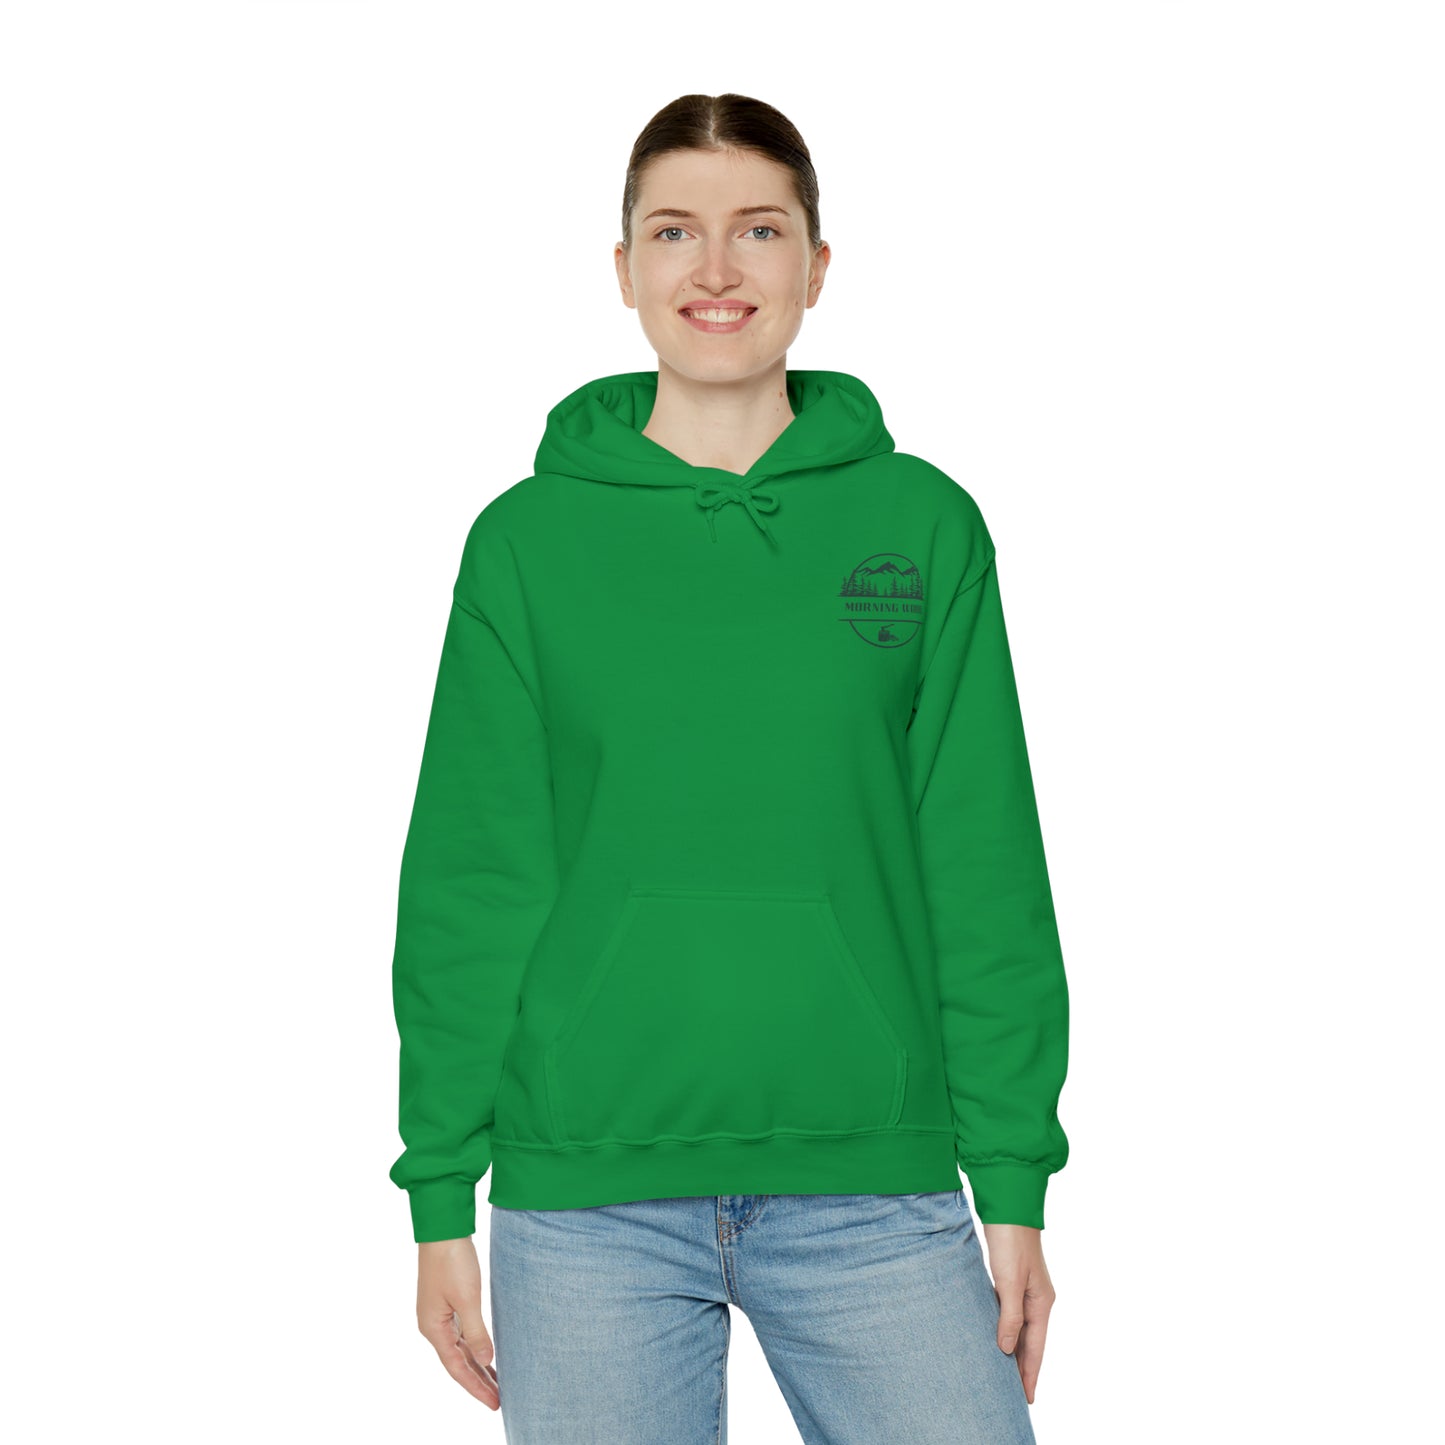 Morning Wood Camping Hoodie - Unisex Heavy Blend™ Hooded Sweatshirt